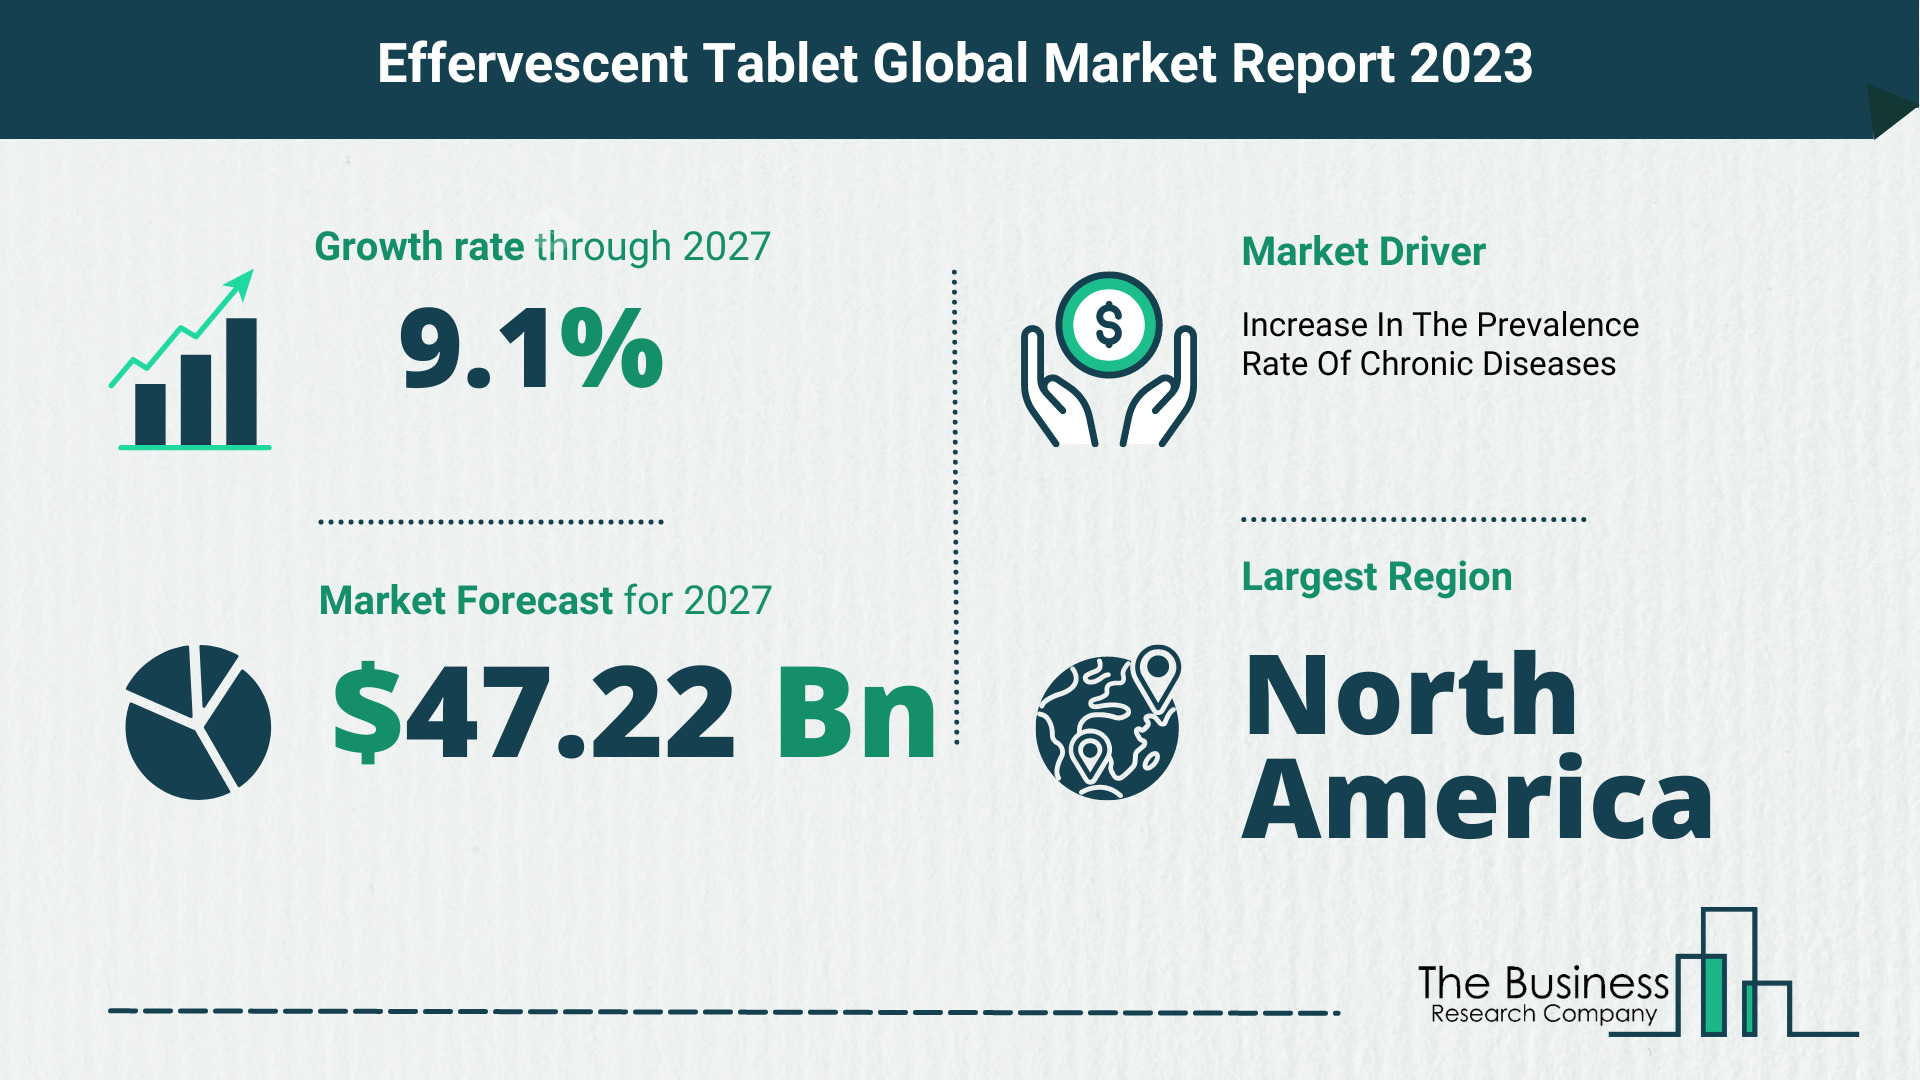 Global Effervescent Tablet Market